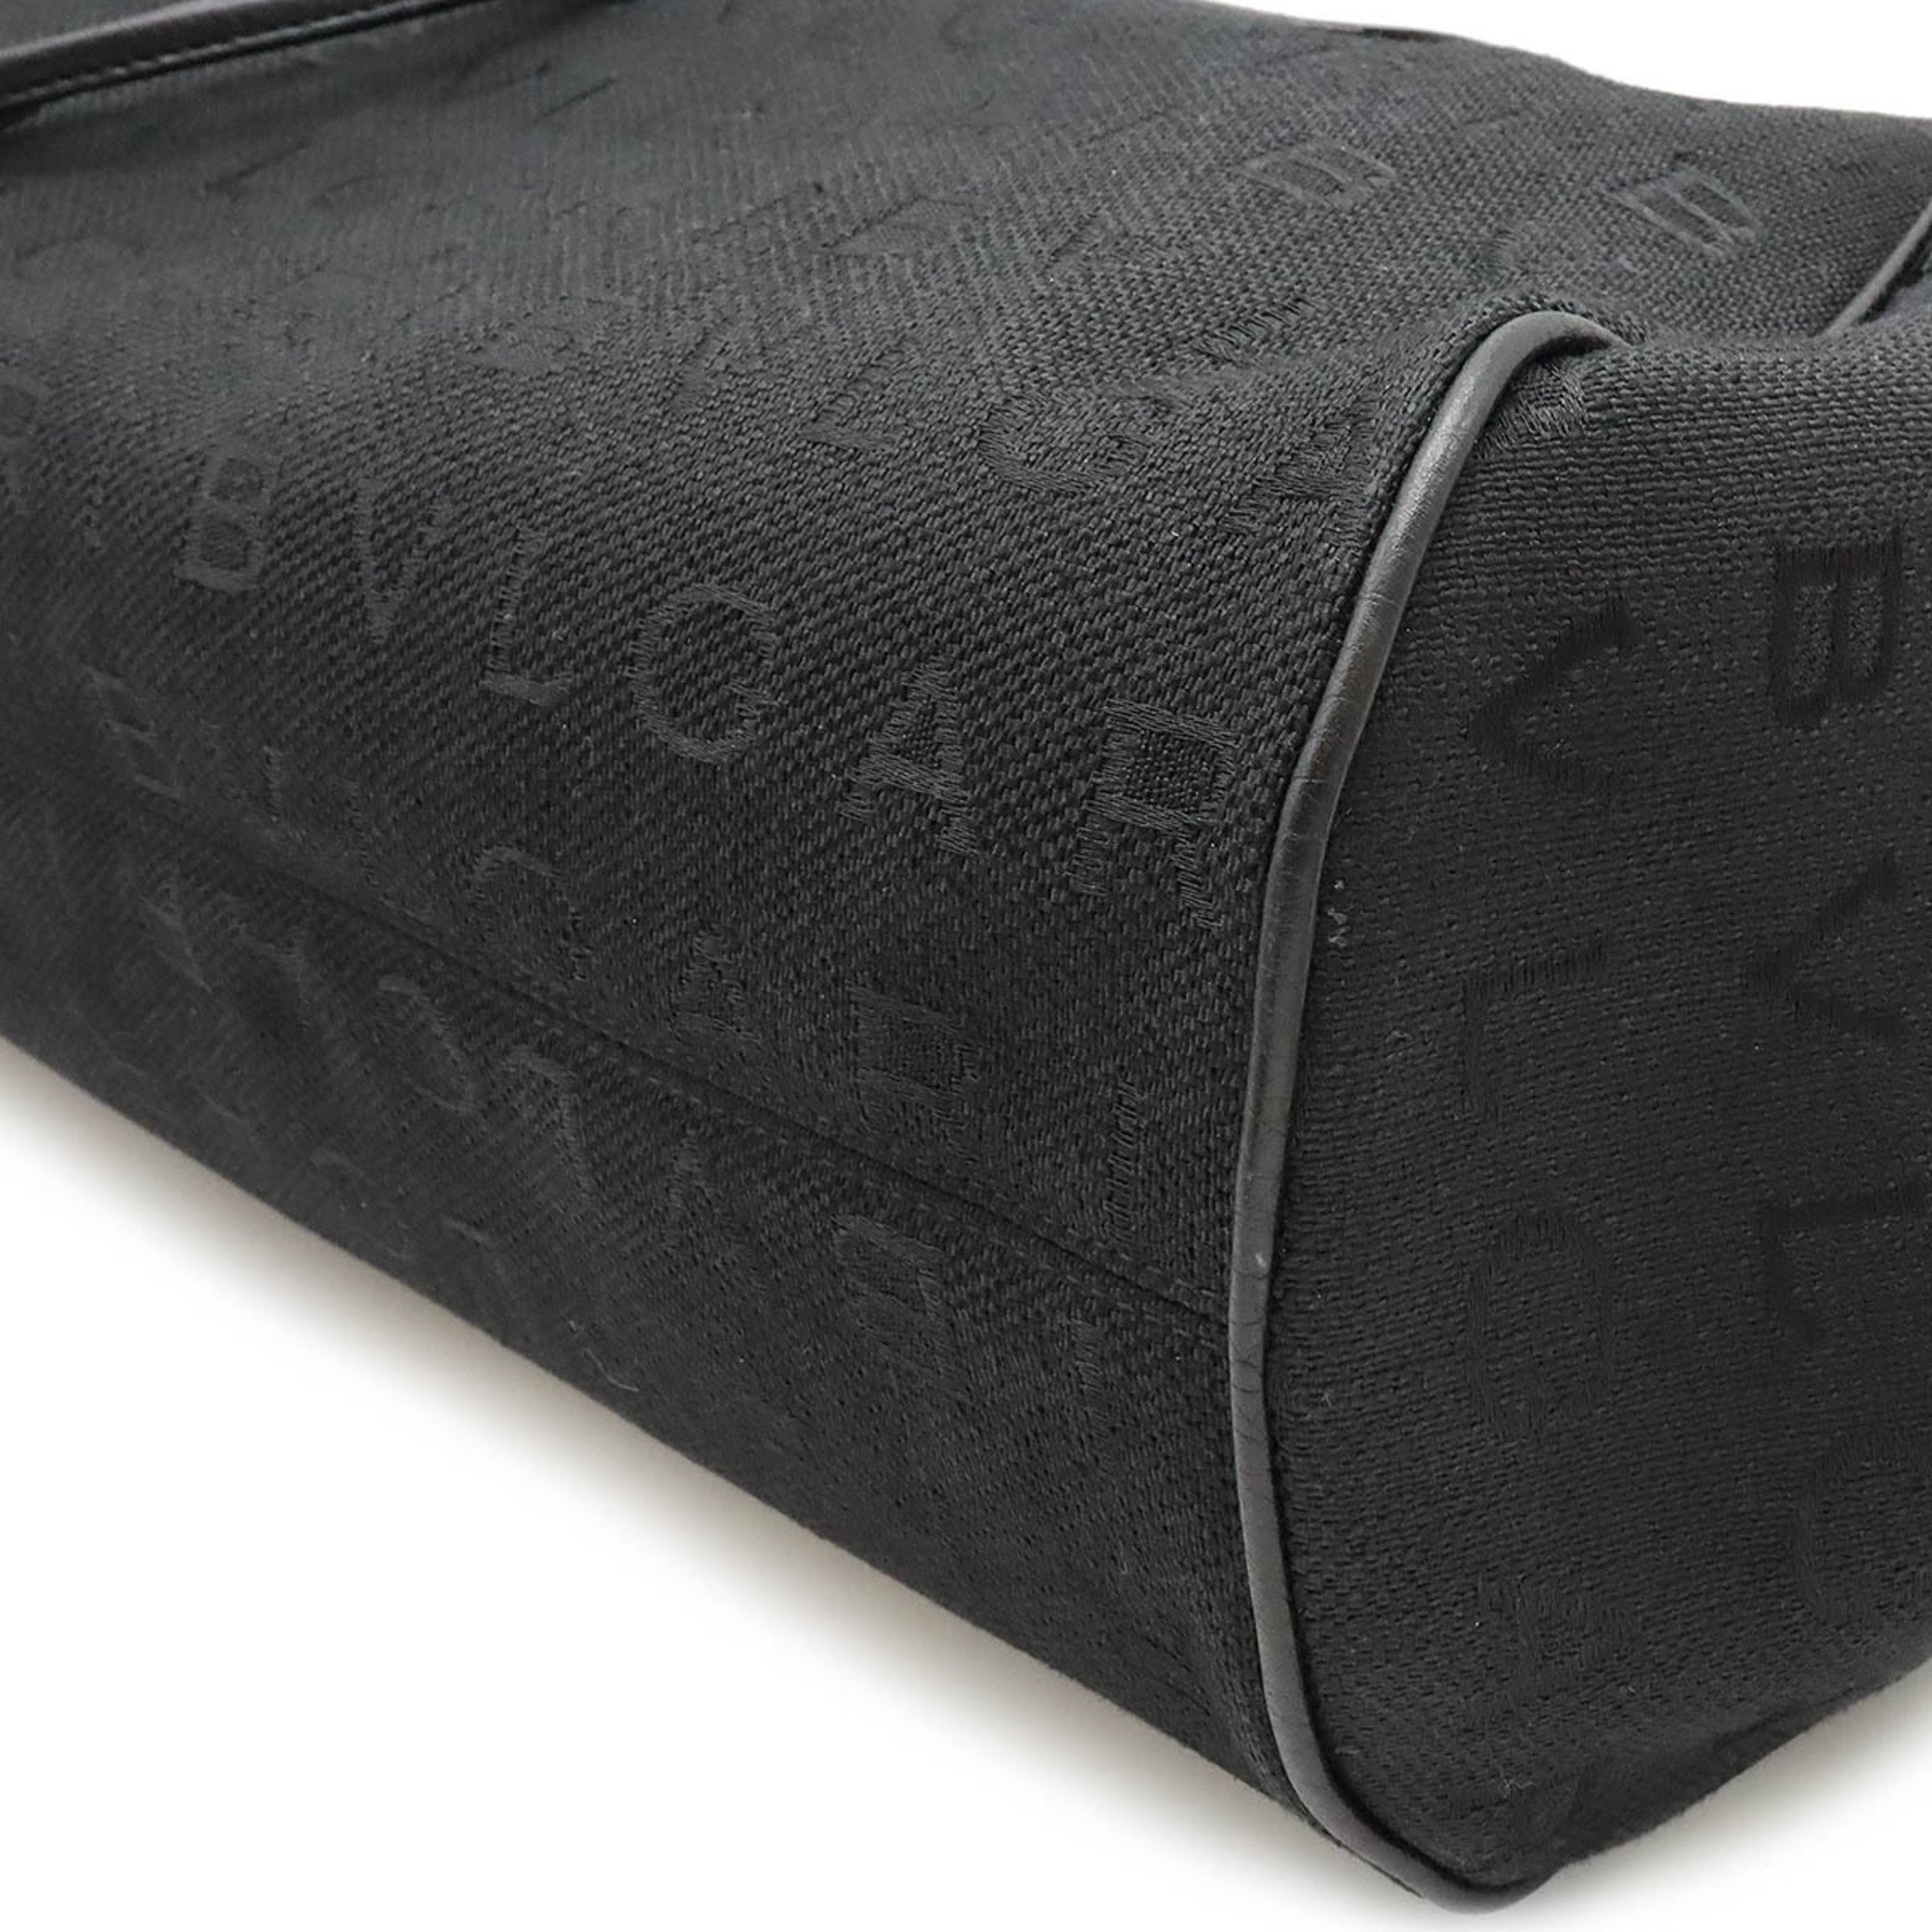 BVLGARI Bvlgari Mania Maxillettare Tote Bag Shoulder Jacquard Canvas Leather Black